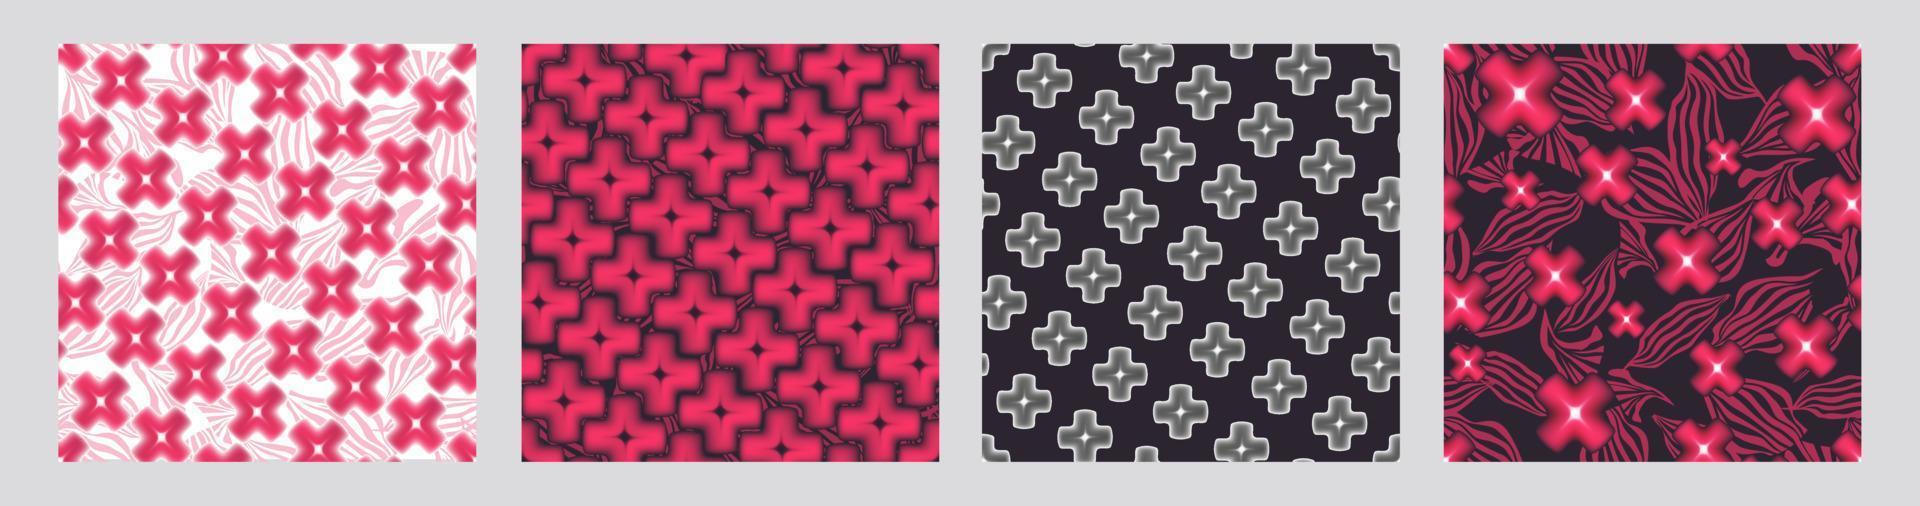 conjunto de patrones sin fisuras florales geométricos abstractos. elementos de diseño de fondo de mosaico artístico. textura ornamental cruzada borrosa. vector